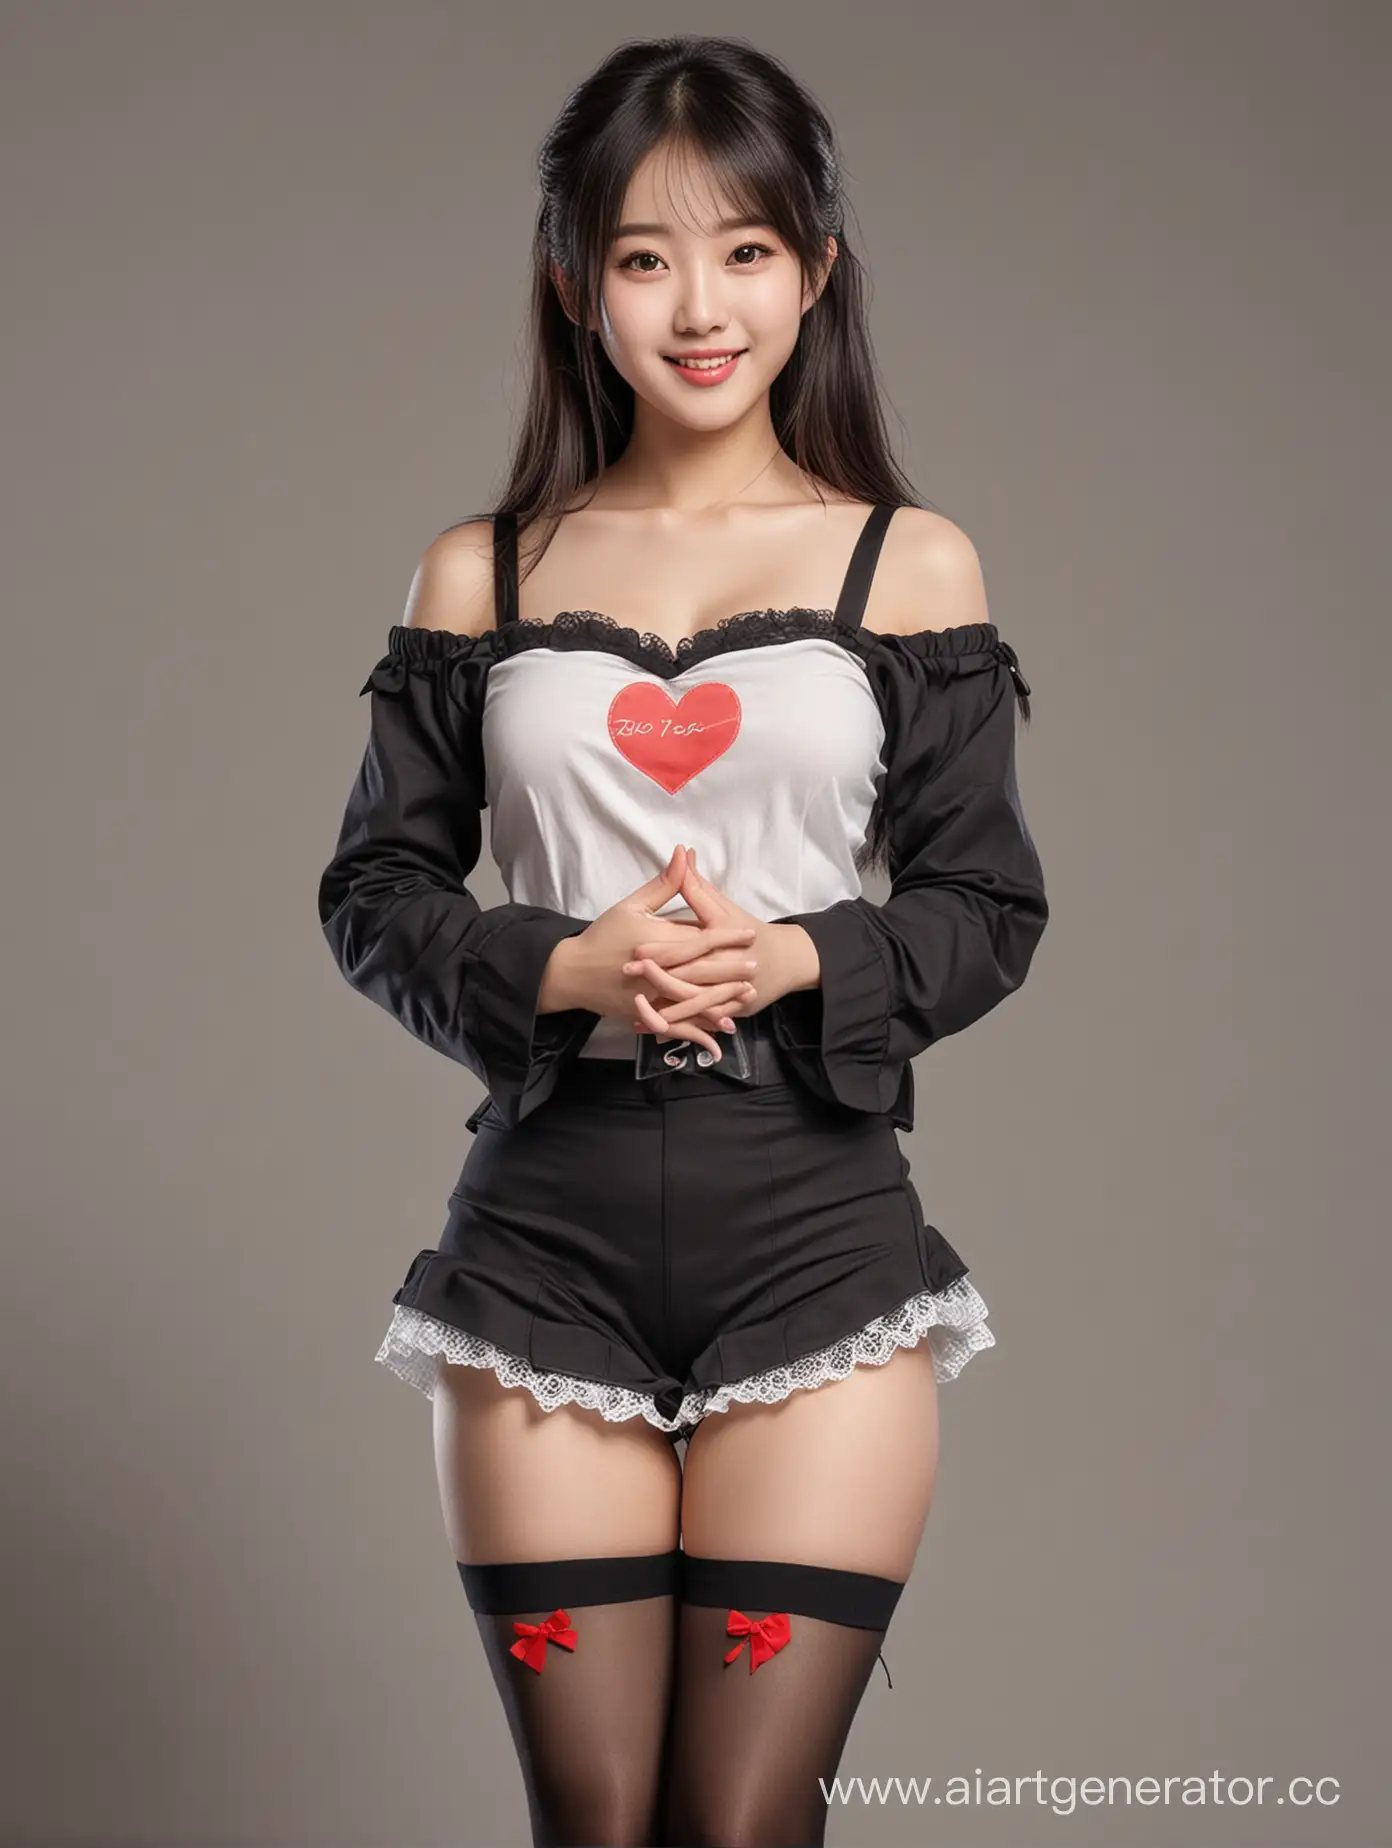 用写实风格绘制一个甜美的东亚女生，身高155～160cm，喜欢穿黑丝袜和可爱的衣服，笑容甜美。人物面向镜头，身体摆出一个双手呈心形姿势，中景构图，确保图像中包含人物的大腿以上部分。